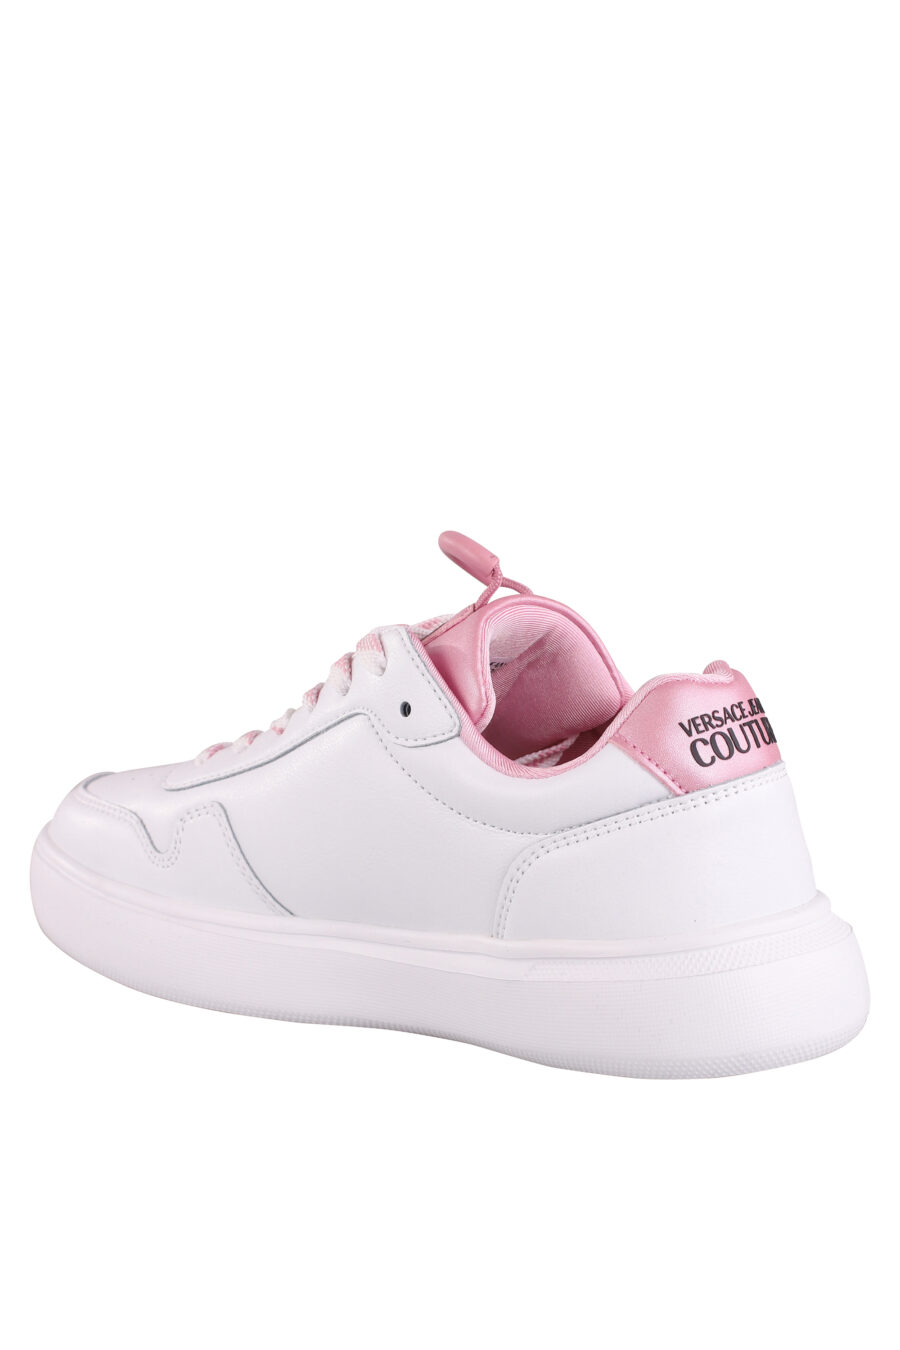 Zapatillas blancas con detalles y logo rosa - IMG 9018